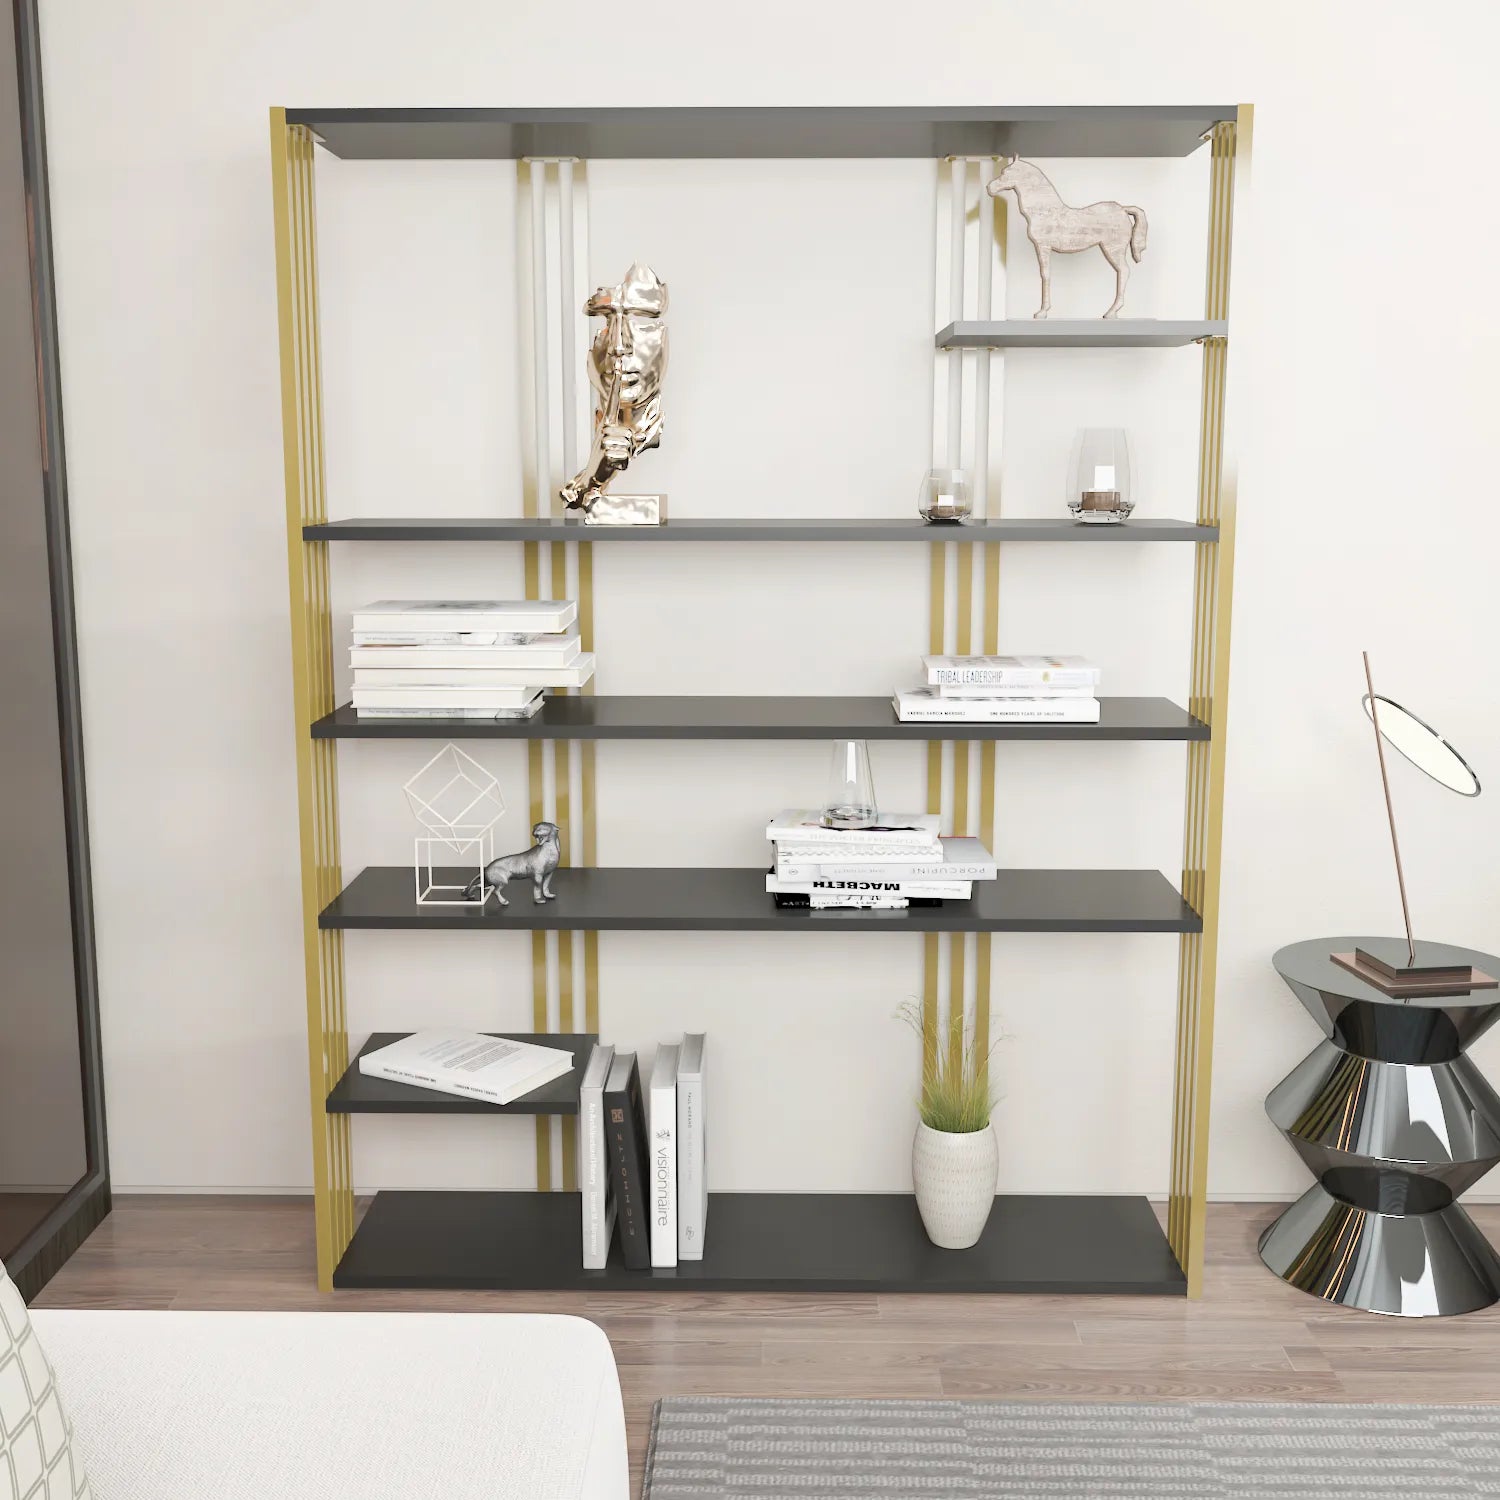 Jeni 63 Tall Metal Wood Bookcase | Bookshelf | Display Unit Silva Green & Black